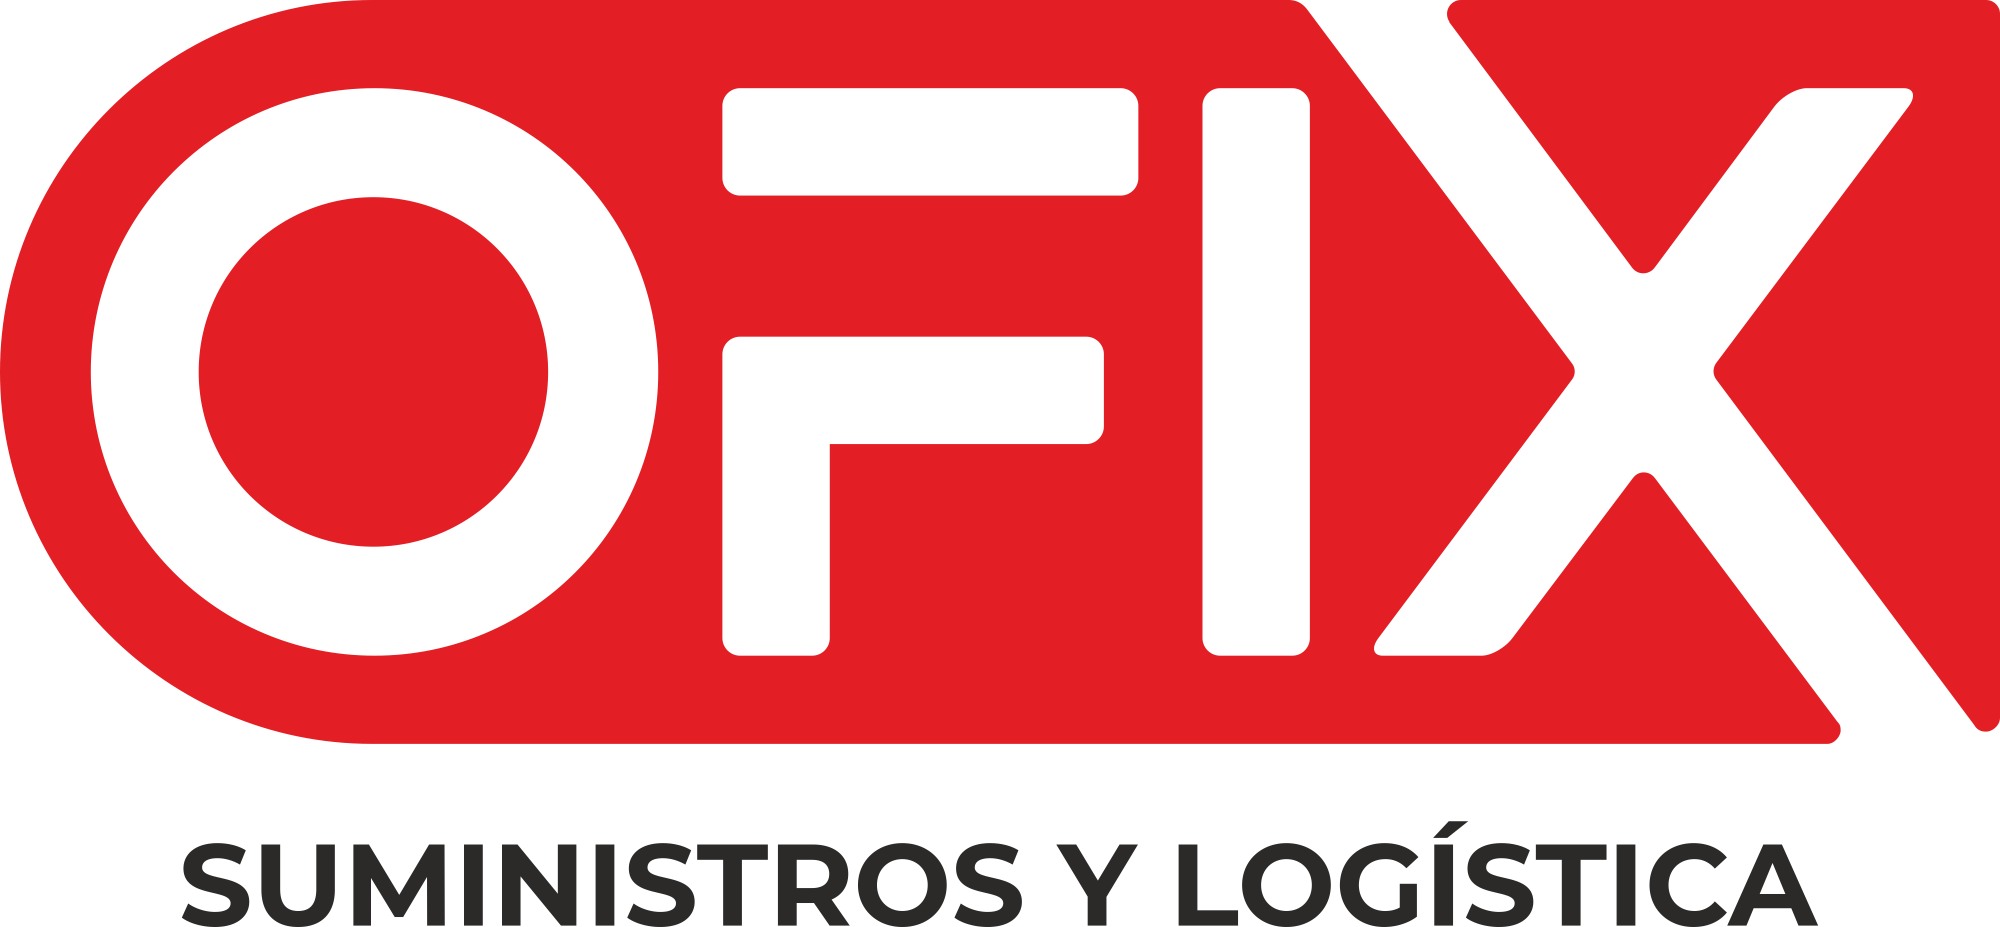 OFIX | Suministros y servicios Logísticos